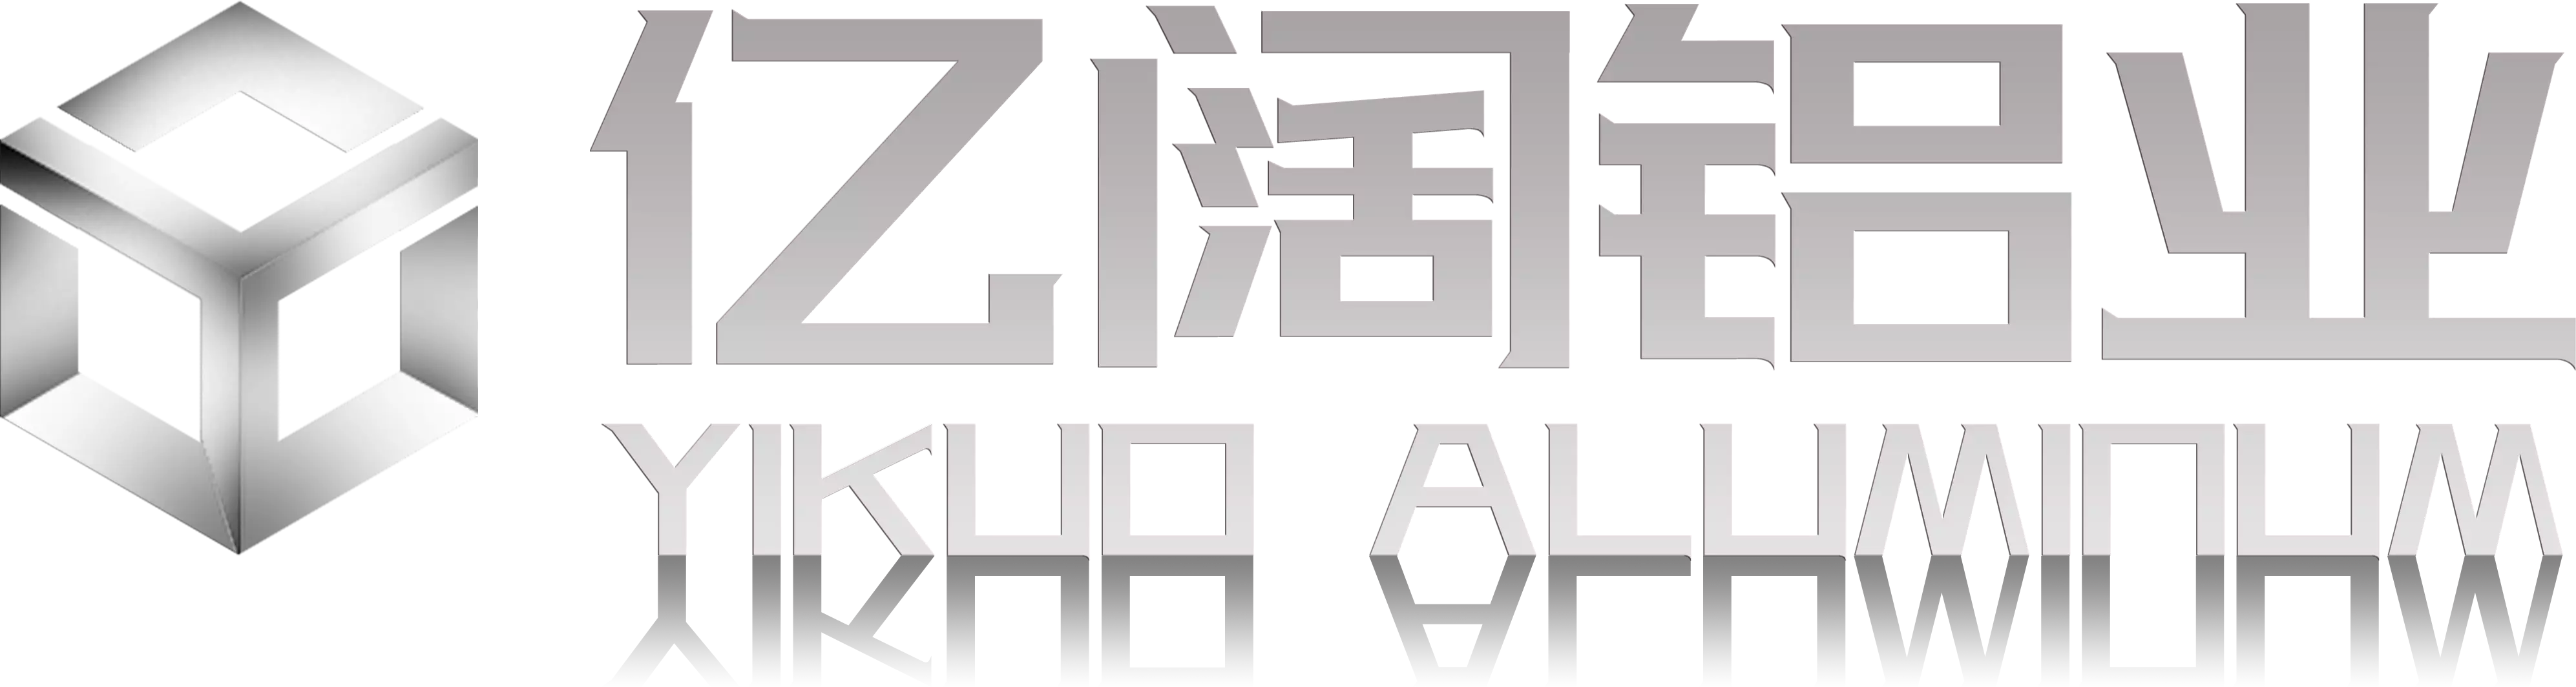 Aluminium YK - Produsen profil Alu